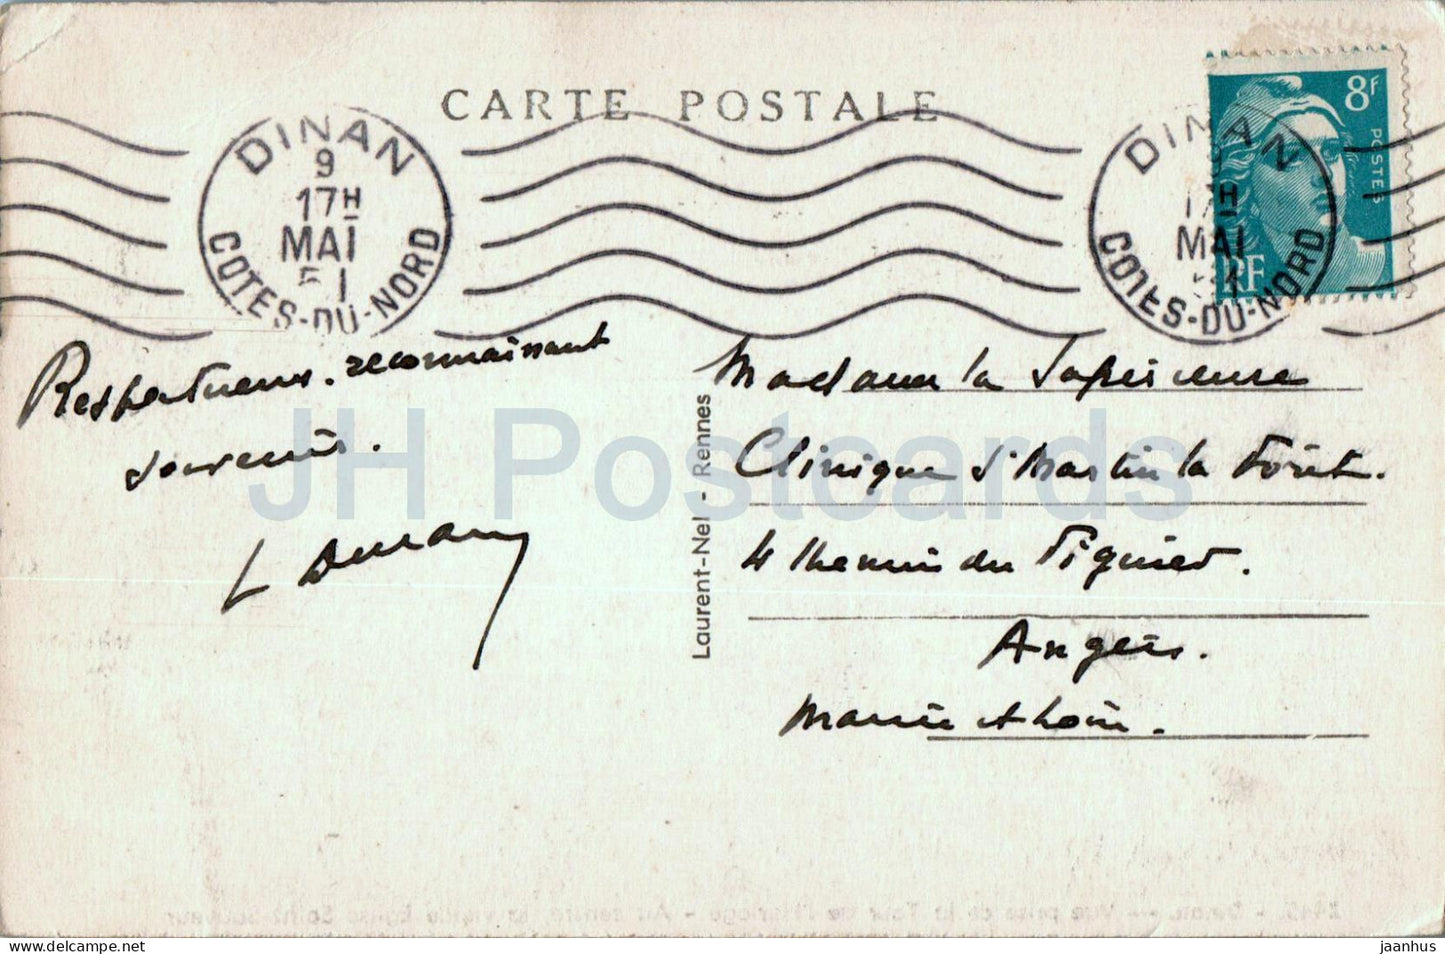 Dinan – Vue prise de la Tour de l'Horloge – Au centre la vieille Eglise – 2445 – alte Postkarte – 1951 – Frankreich – gebraucht